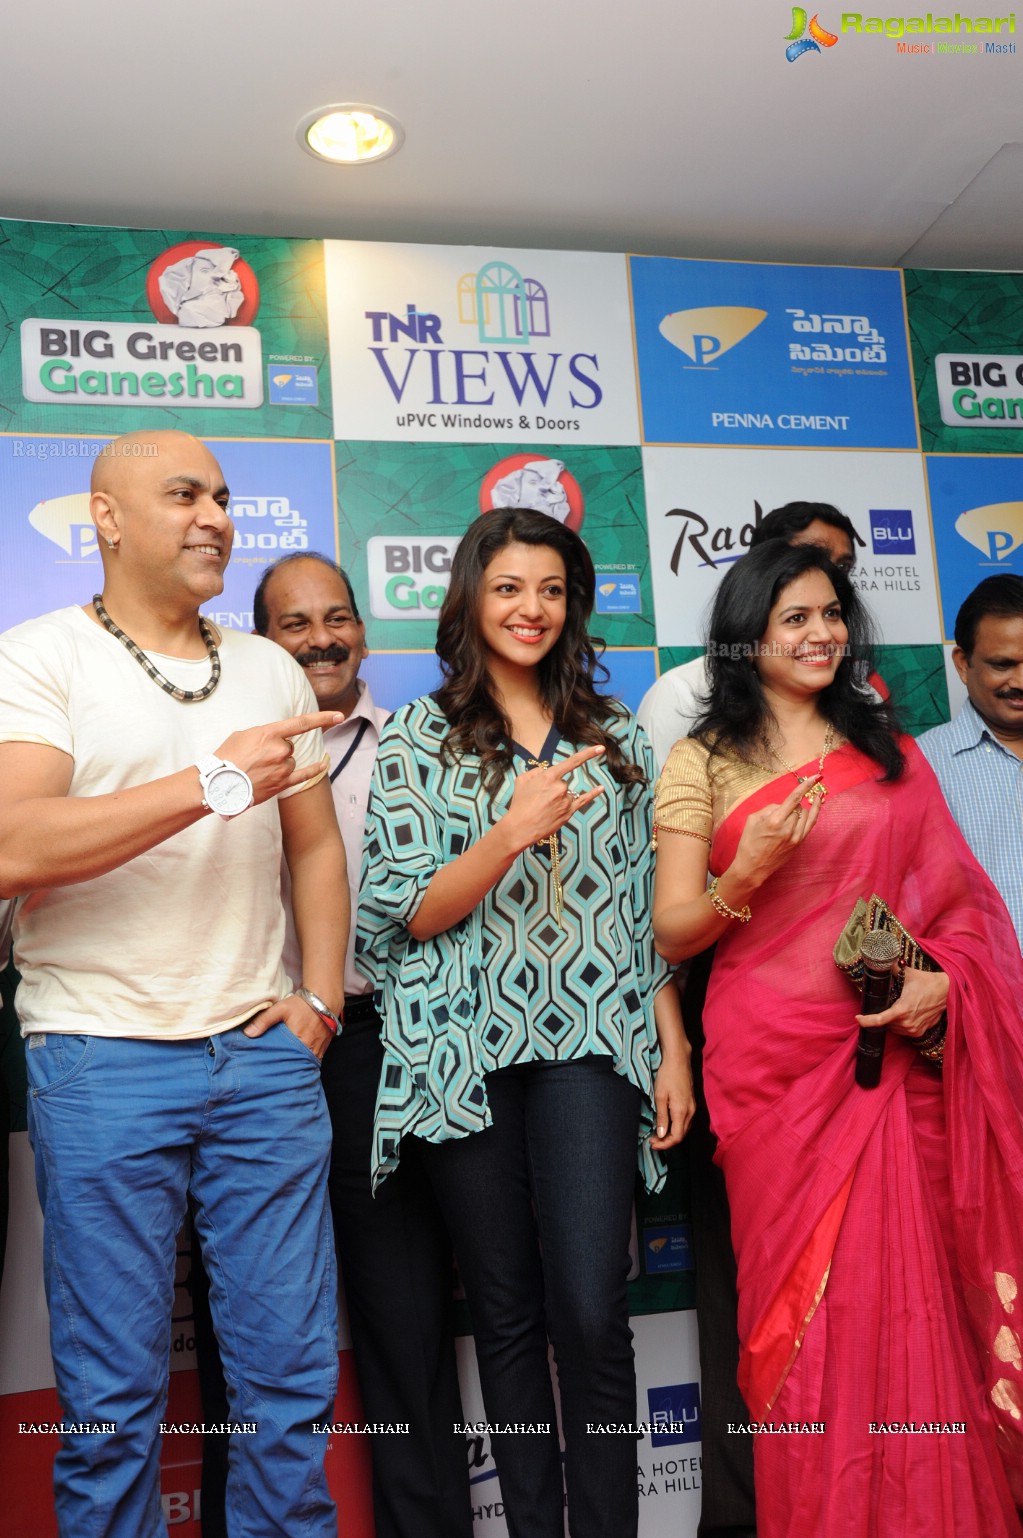 92.7 Big FM Hyderabad launches Big Green Ganesha 2013 at Radisson Blu Hotel, Hyderabad